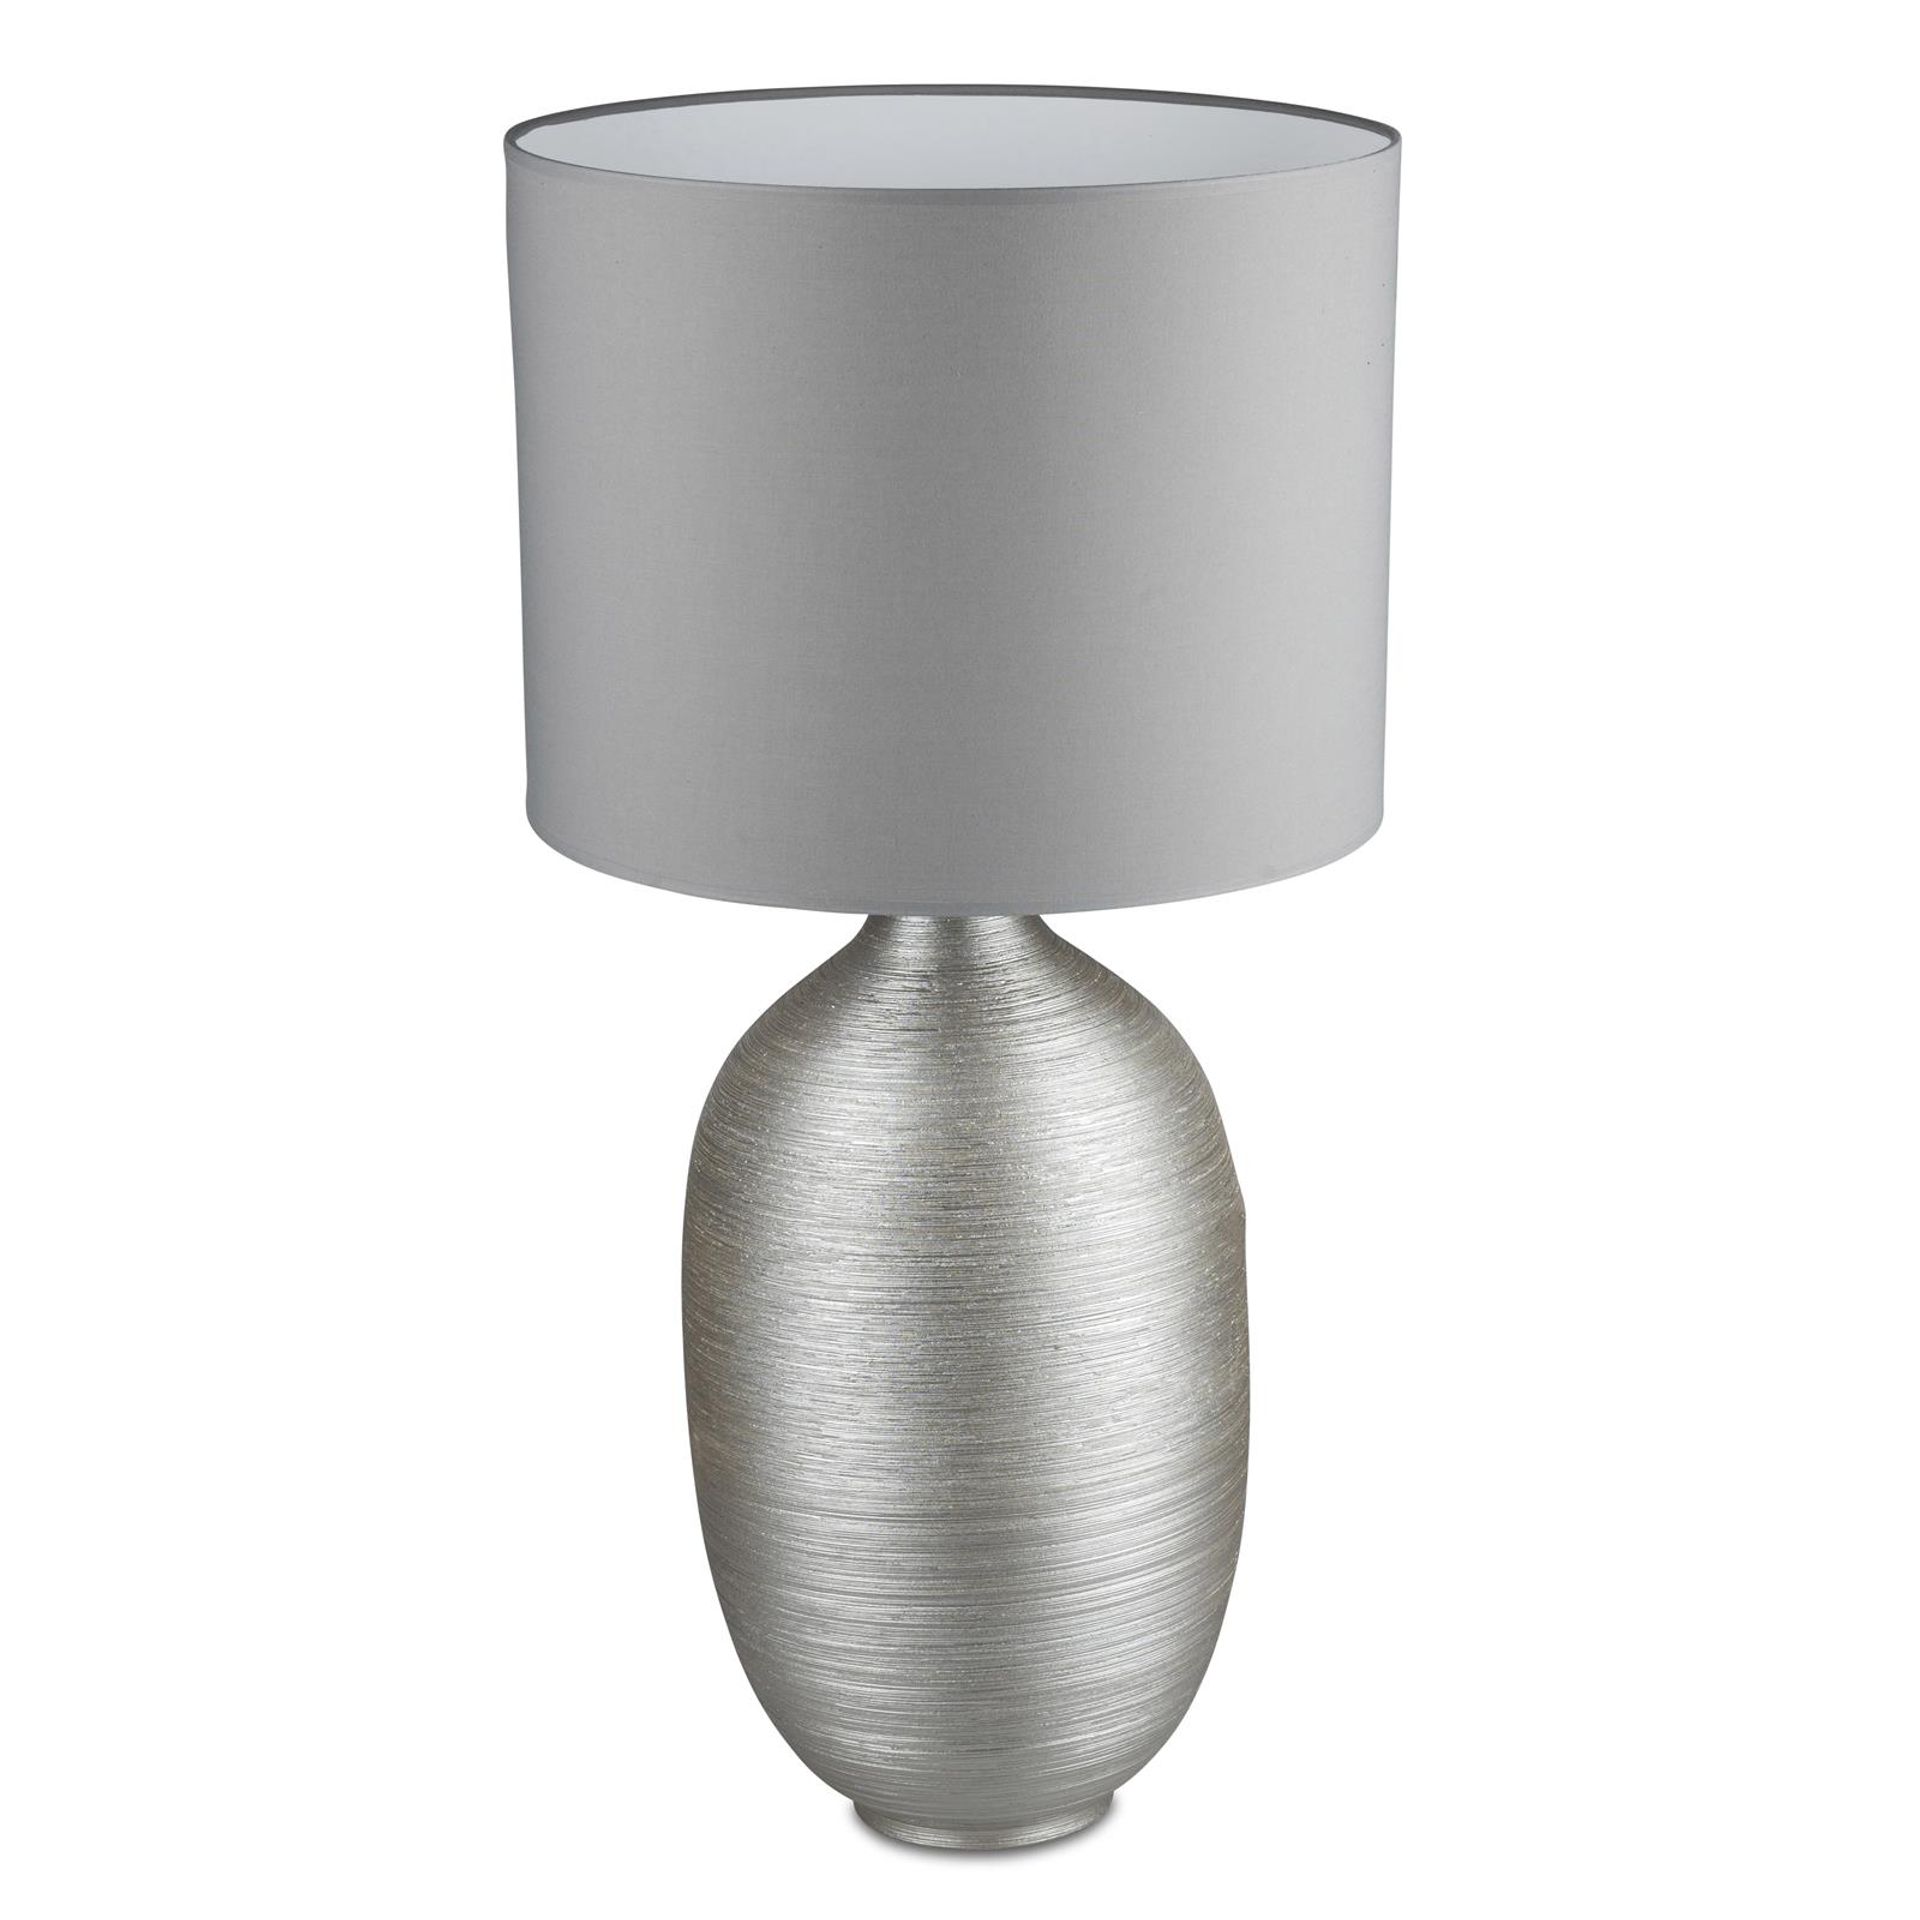 Champagnerzauber: Komplette Lampe 90 cm mit Fuß aus matter, strukturierter Keramik und grauem Stoffschirm